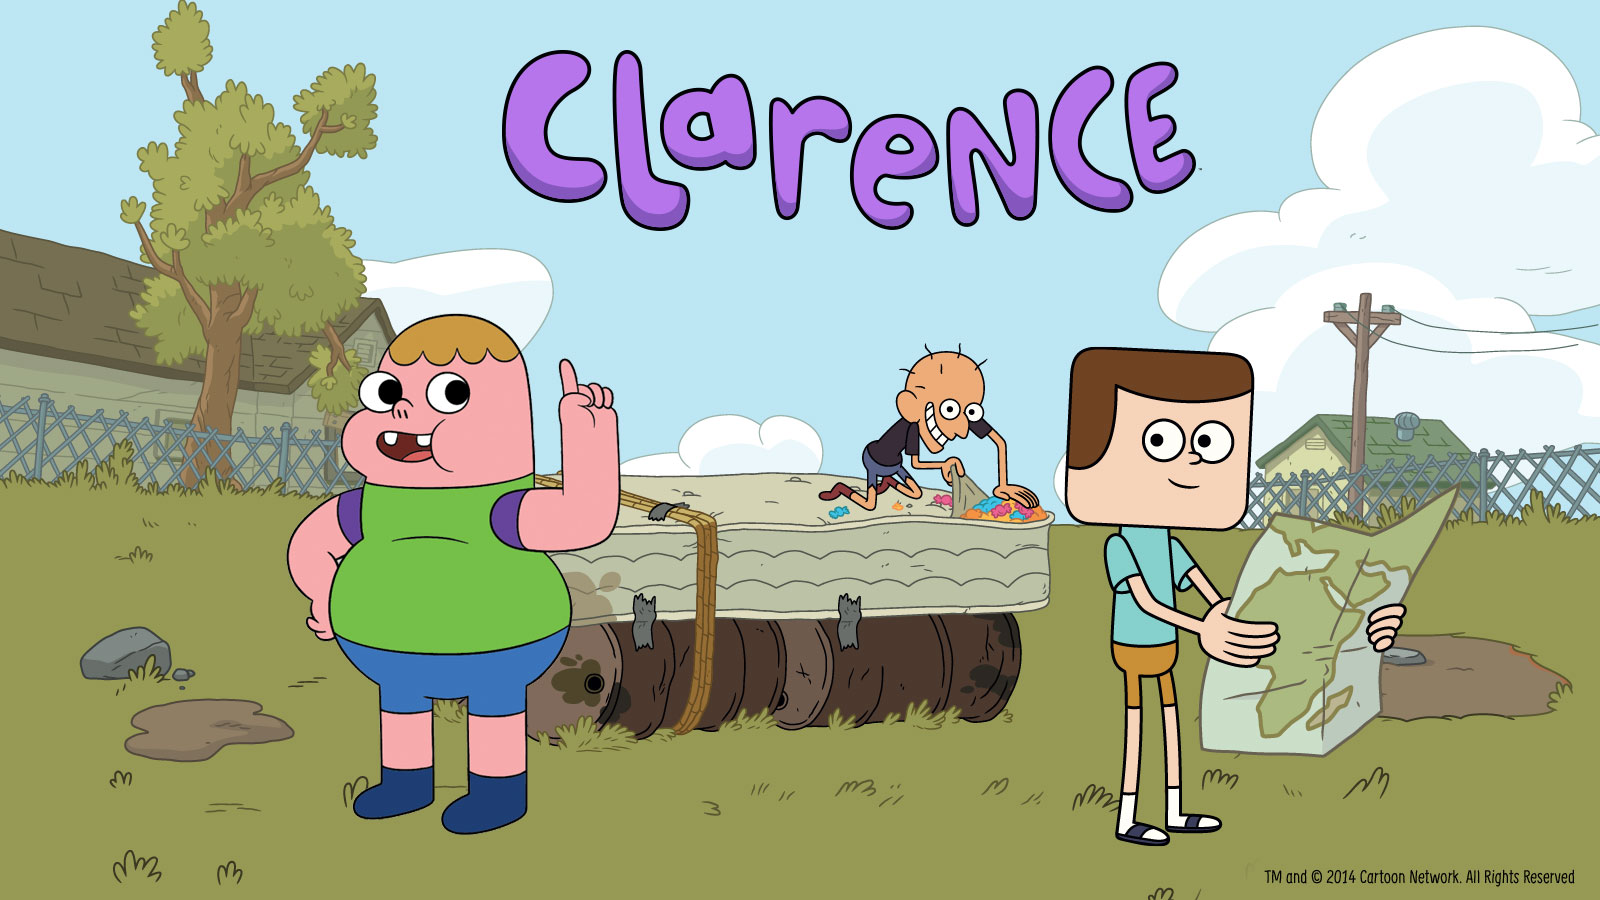 50+] Clarence Wallpaper 2 Cartoon Network - WallpaperSafari